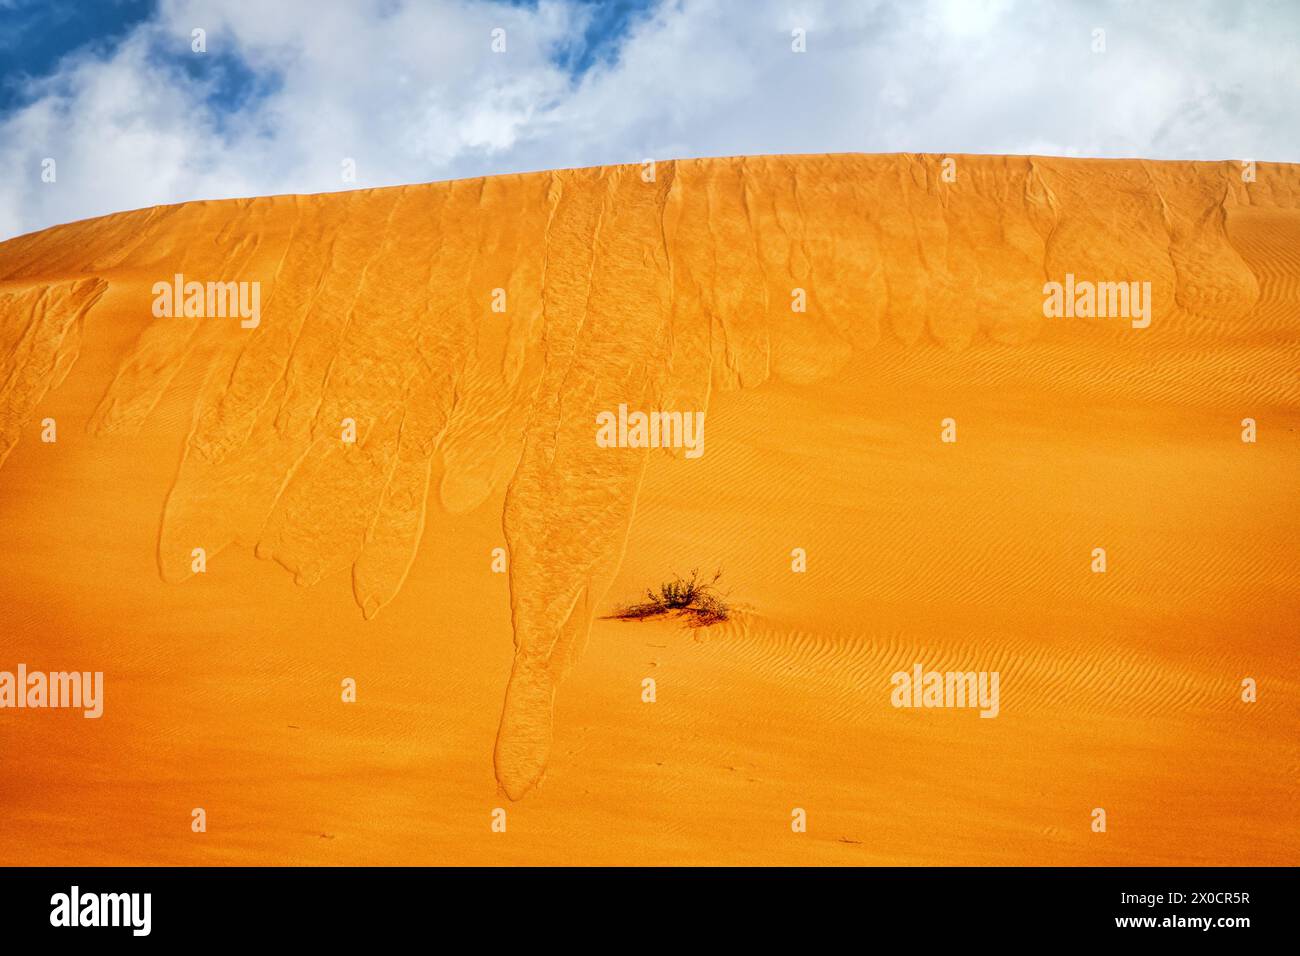 La sabbia cade. Sabbia frana dalla cresta di una duna rossa (ossido di ferro) a causa dell'aumento del carico (ma non del vento). Barkhan nel deserto Arabico. Foto Stock